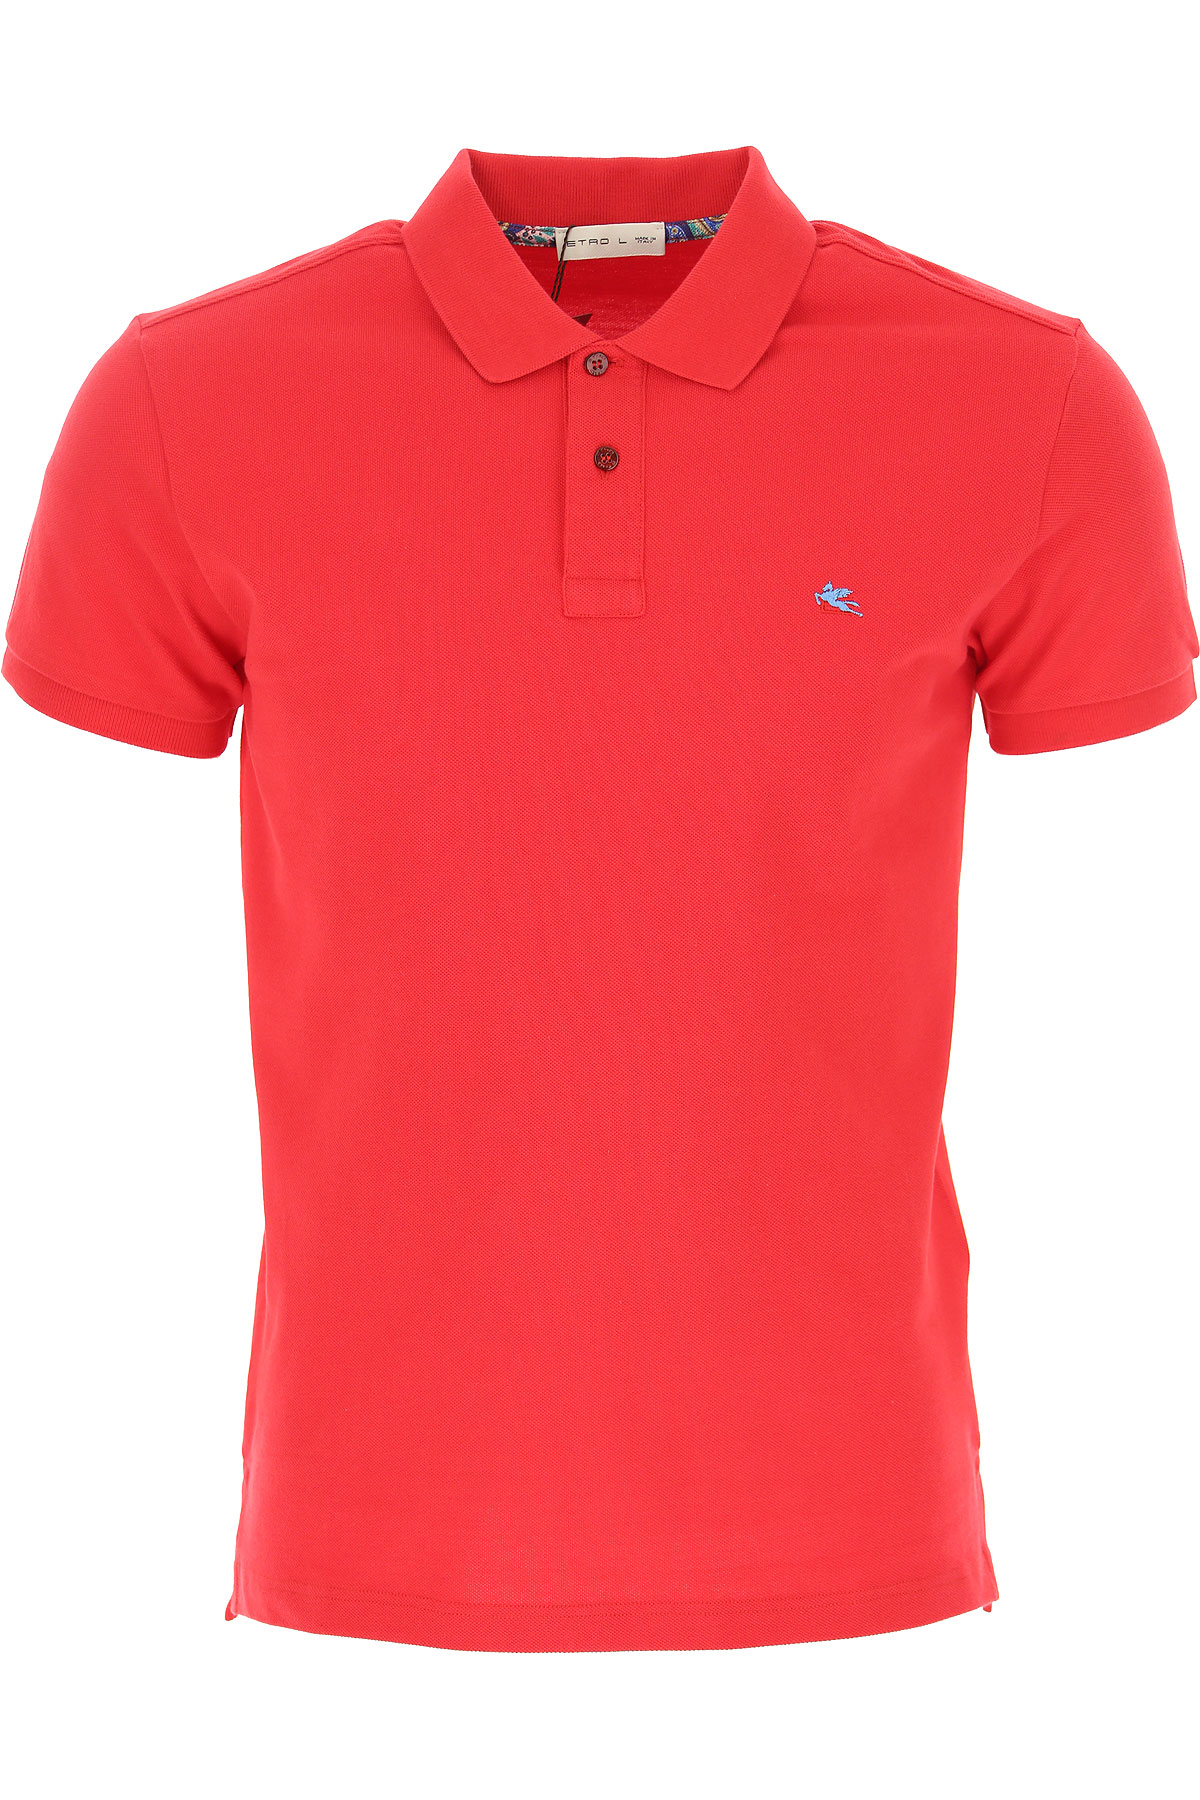 Etro Polohemd für Herren, Polo-Hemd, Polo-Shirt Günstig im Sale, Rot, Baumwolle, 2017, L M XL